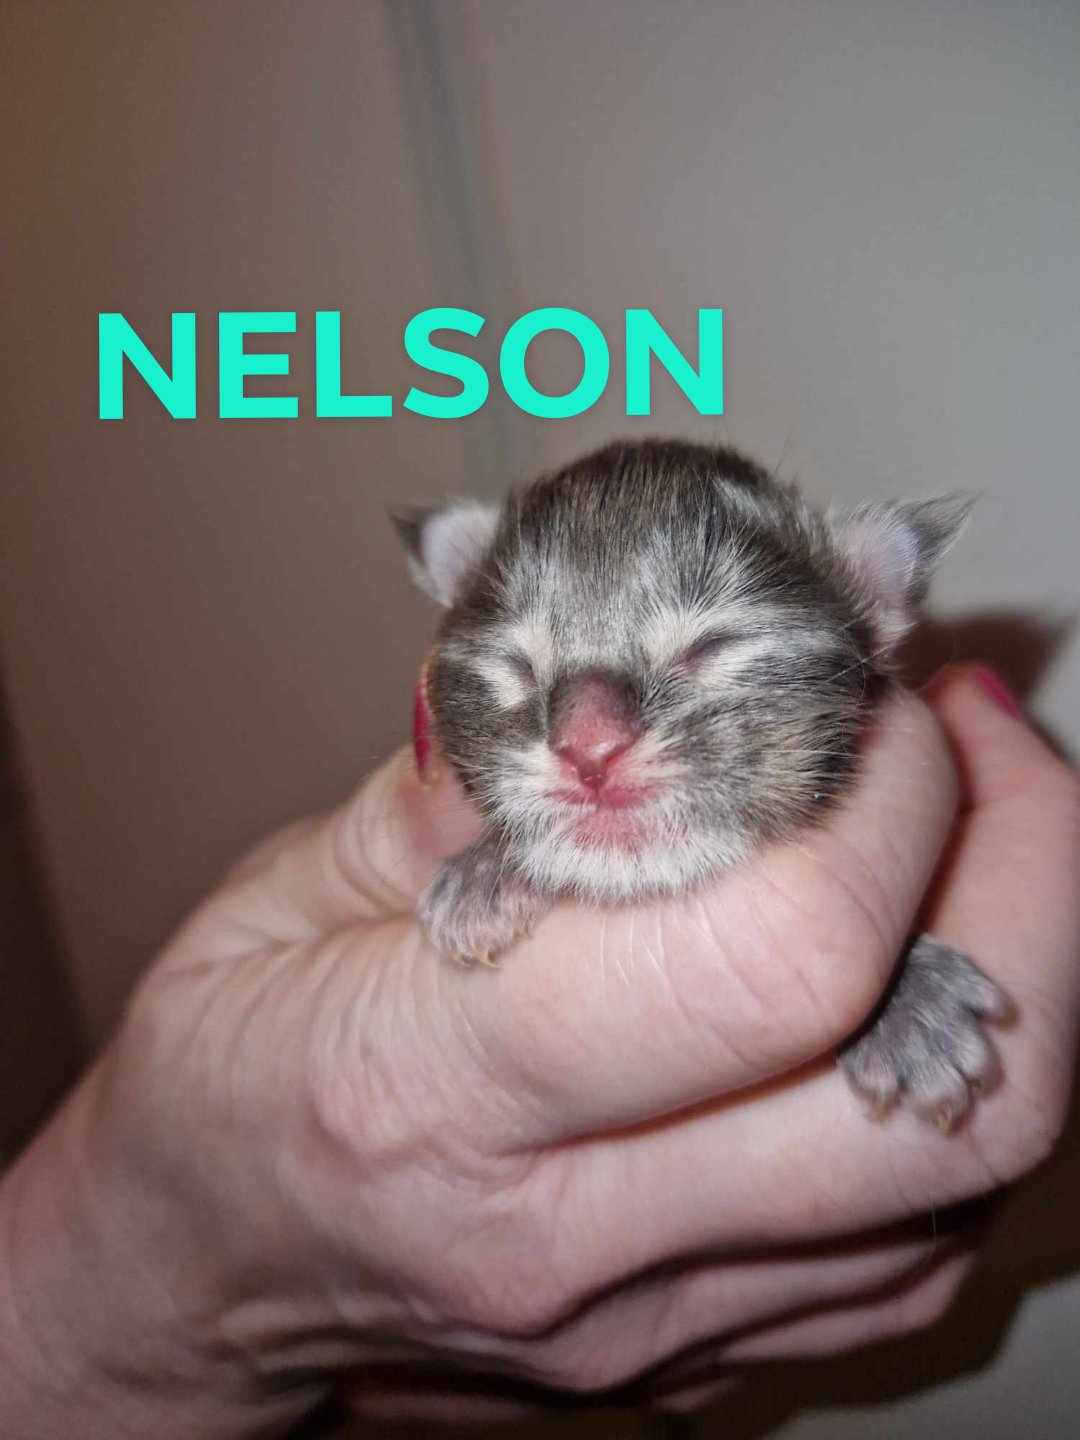 Nelson 1v